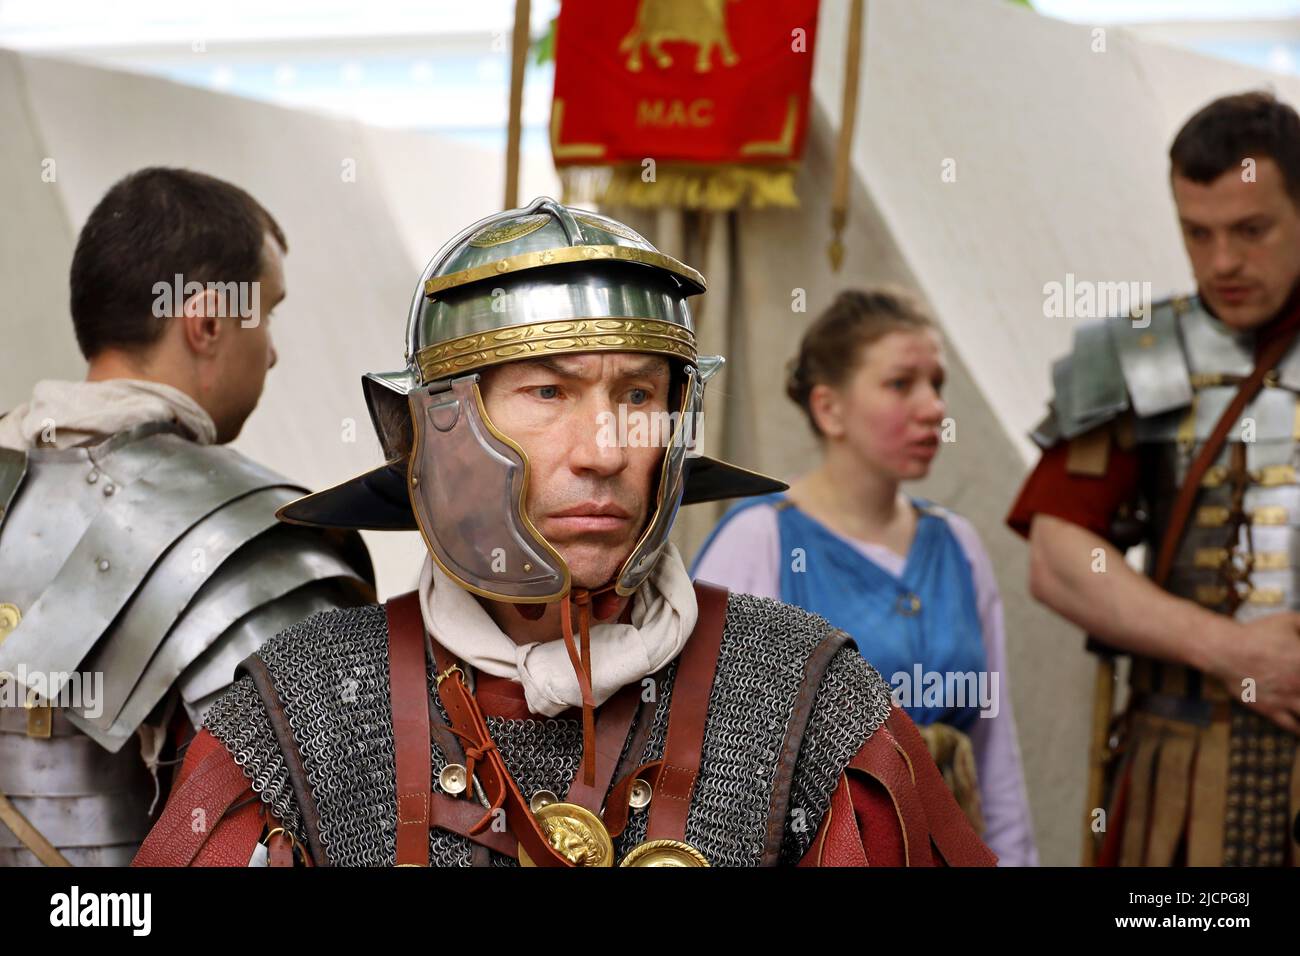 Soldato di una Legione romana con legionari sullo sfondo durante i periodi storici delle feste e delle epoche. Legionario nel campo, esercito dell'antica Roma Foto Stock